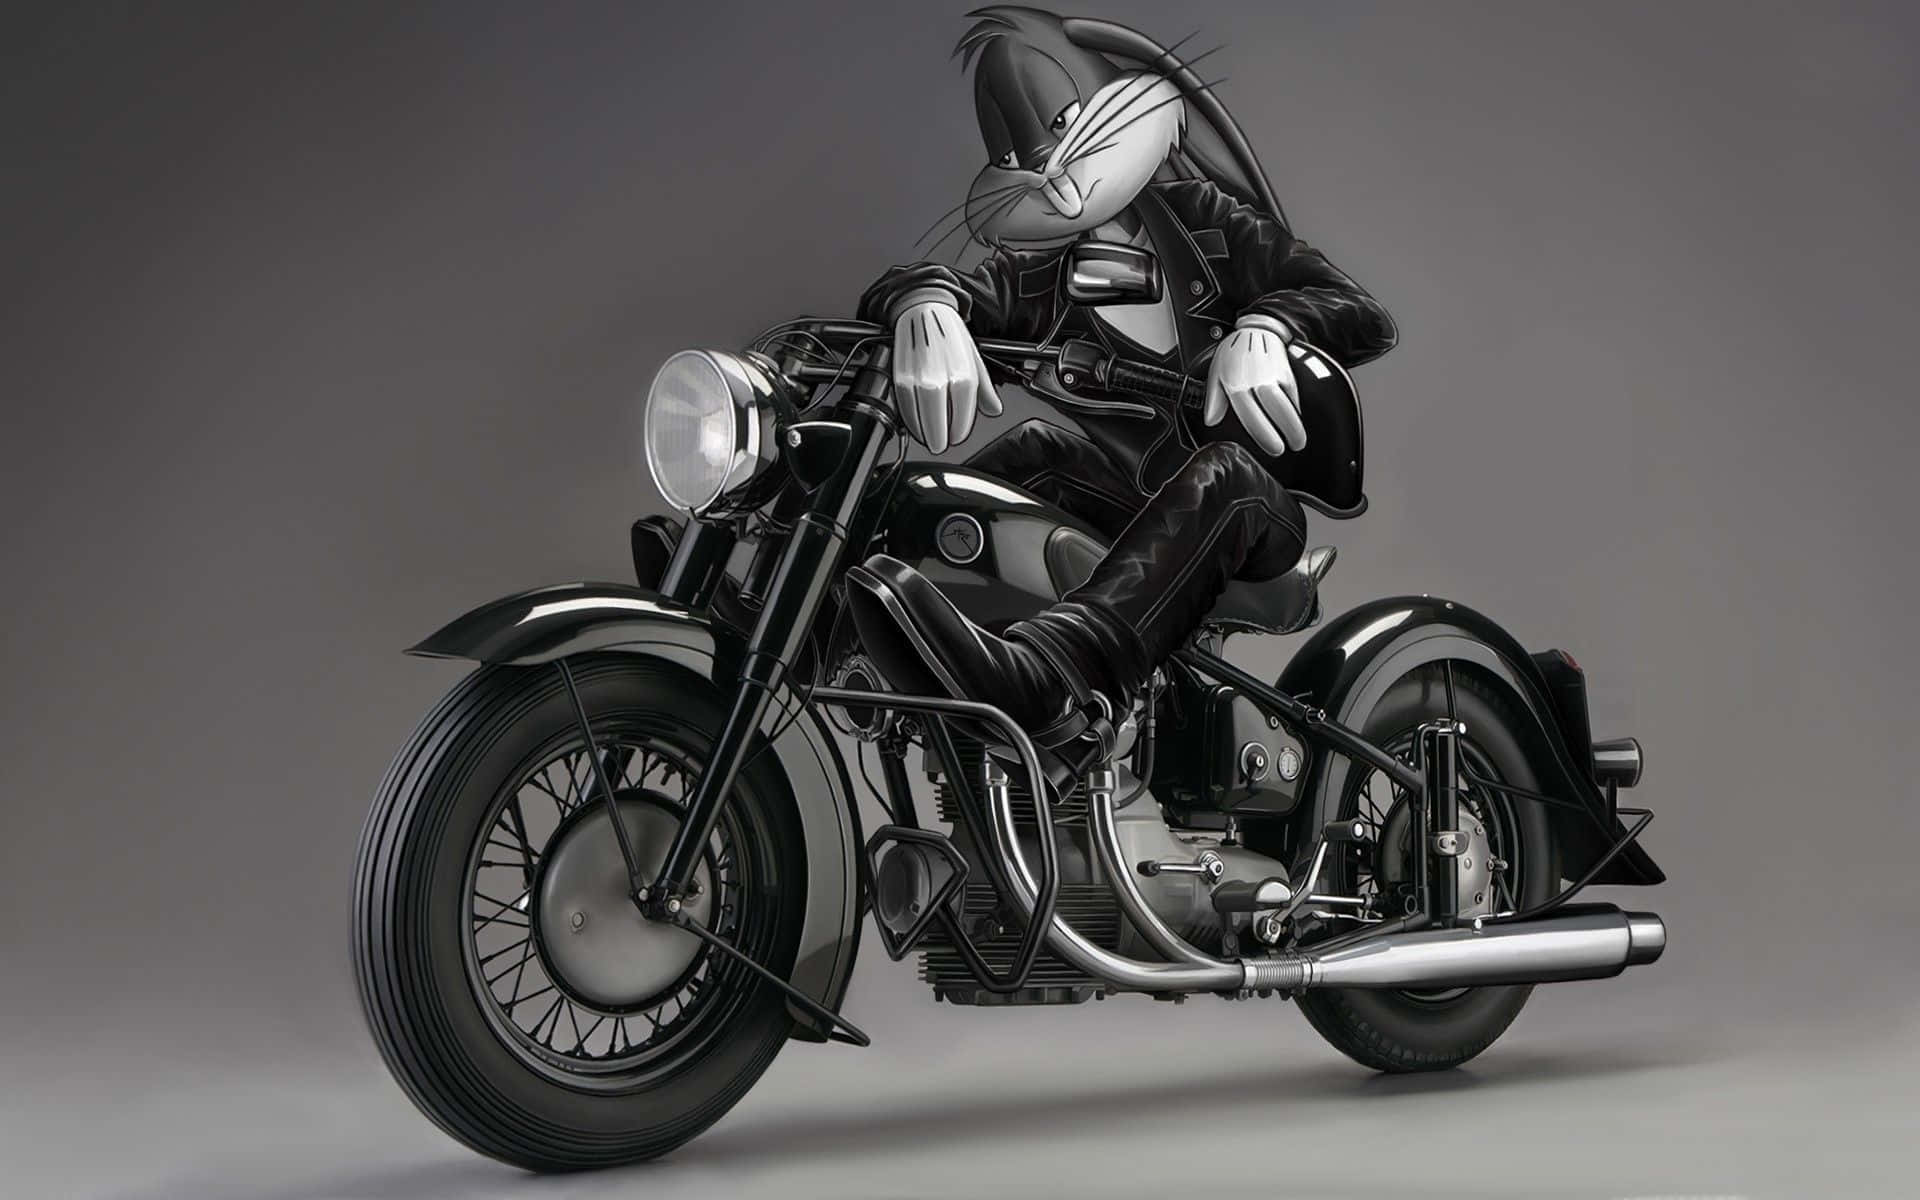 Cool Bugs Bunny Motorcycle Photoshoot Wallpaper